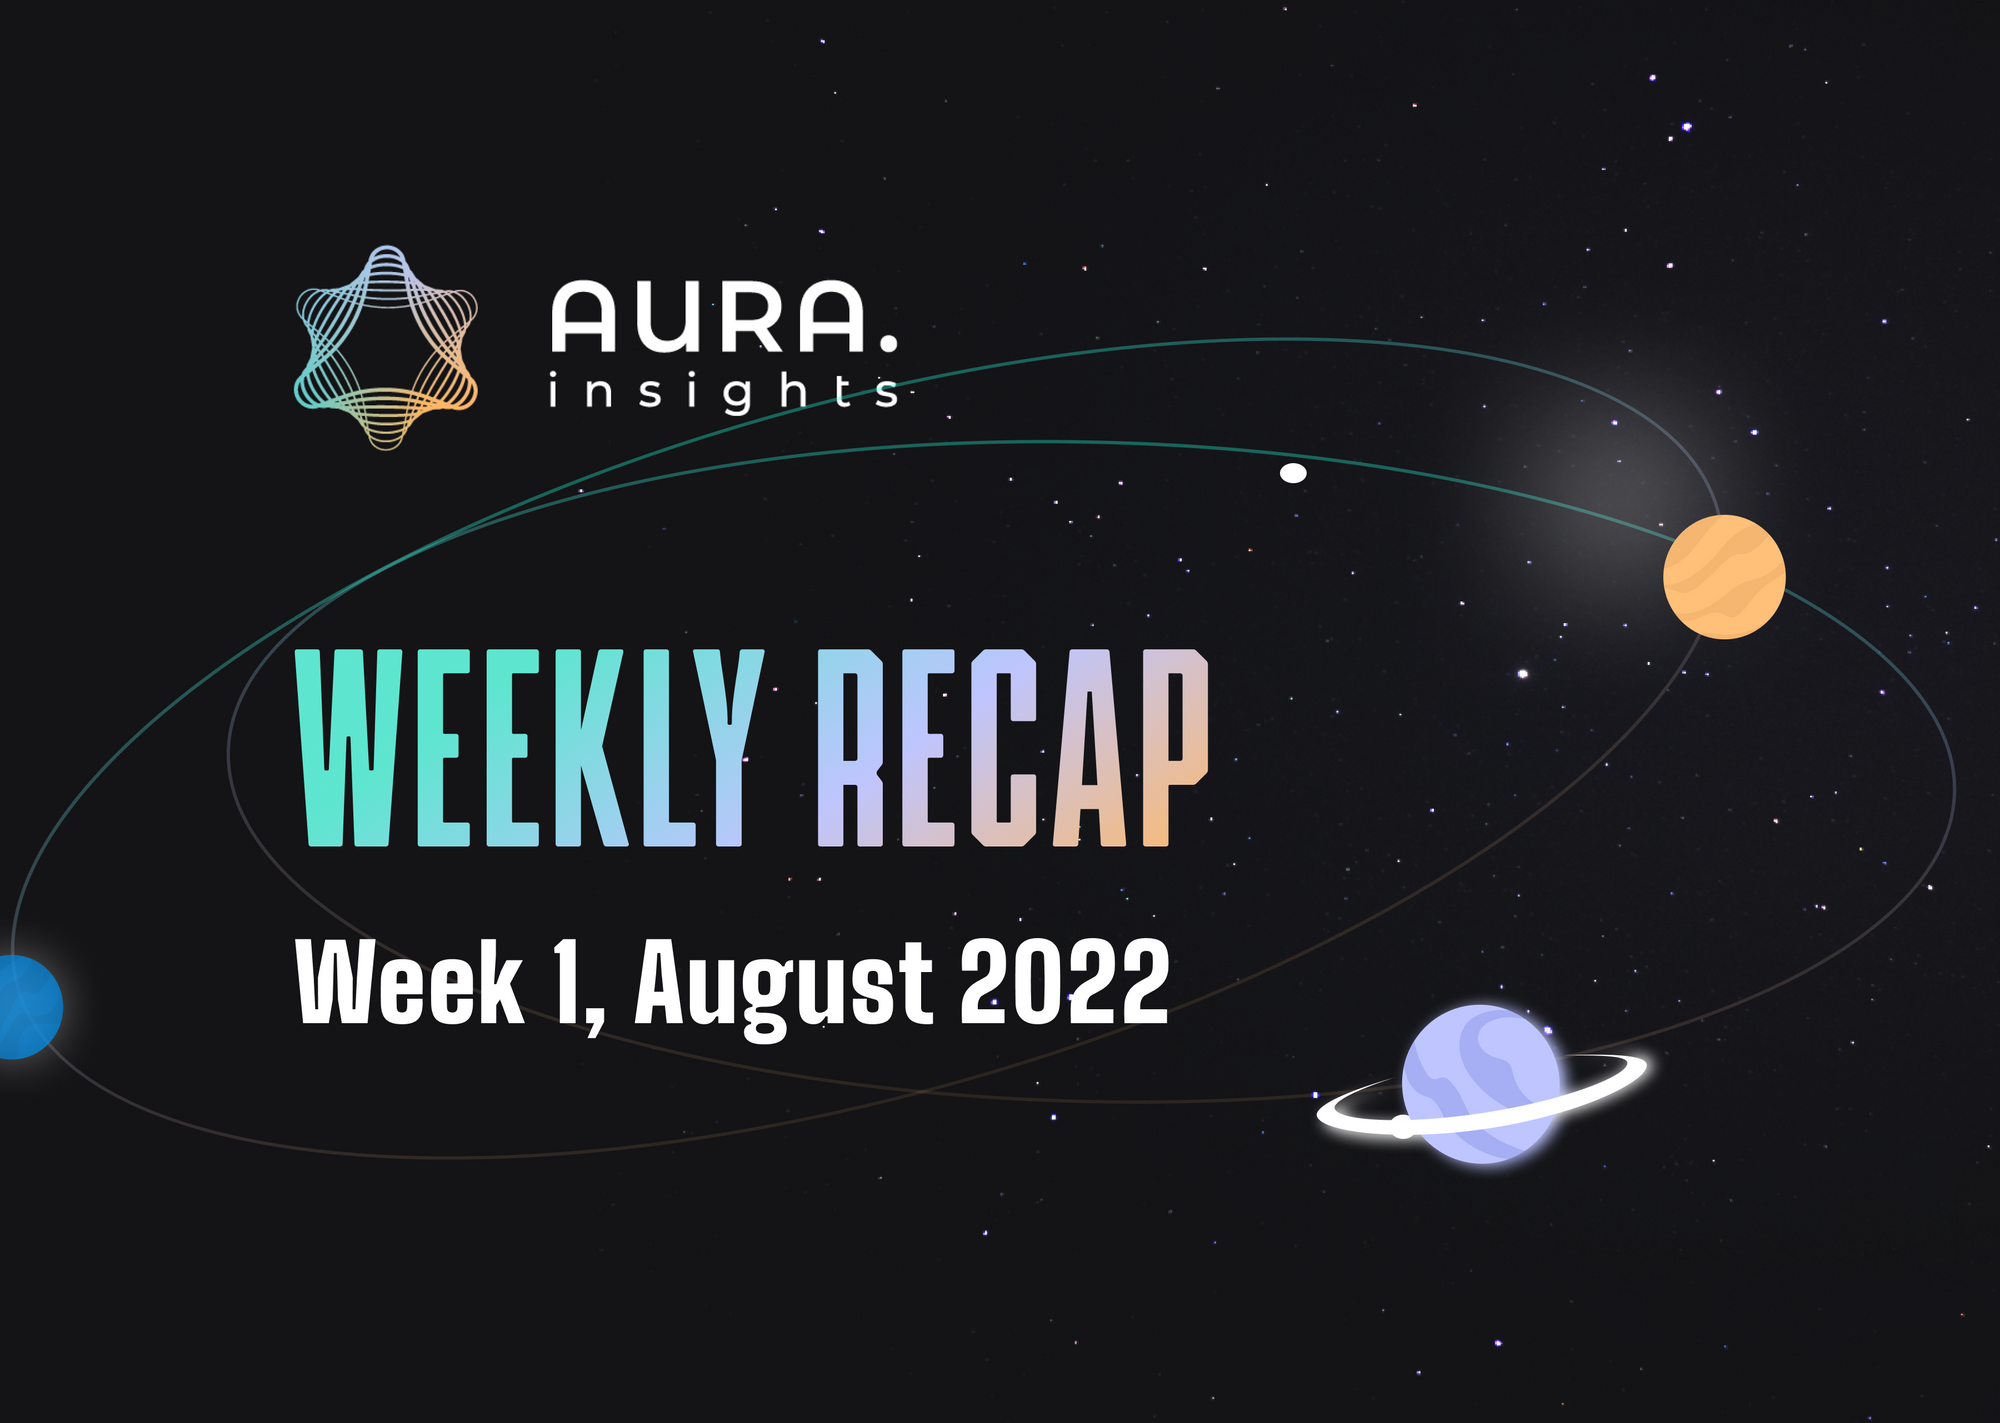 AURA WEEKLY RECAP #5 - WEEK 1, AUGUST